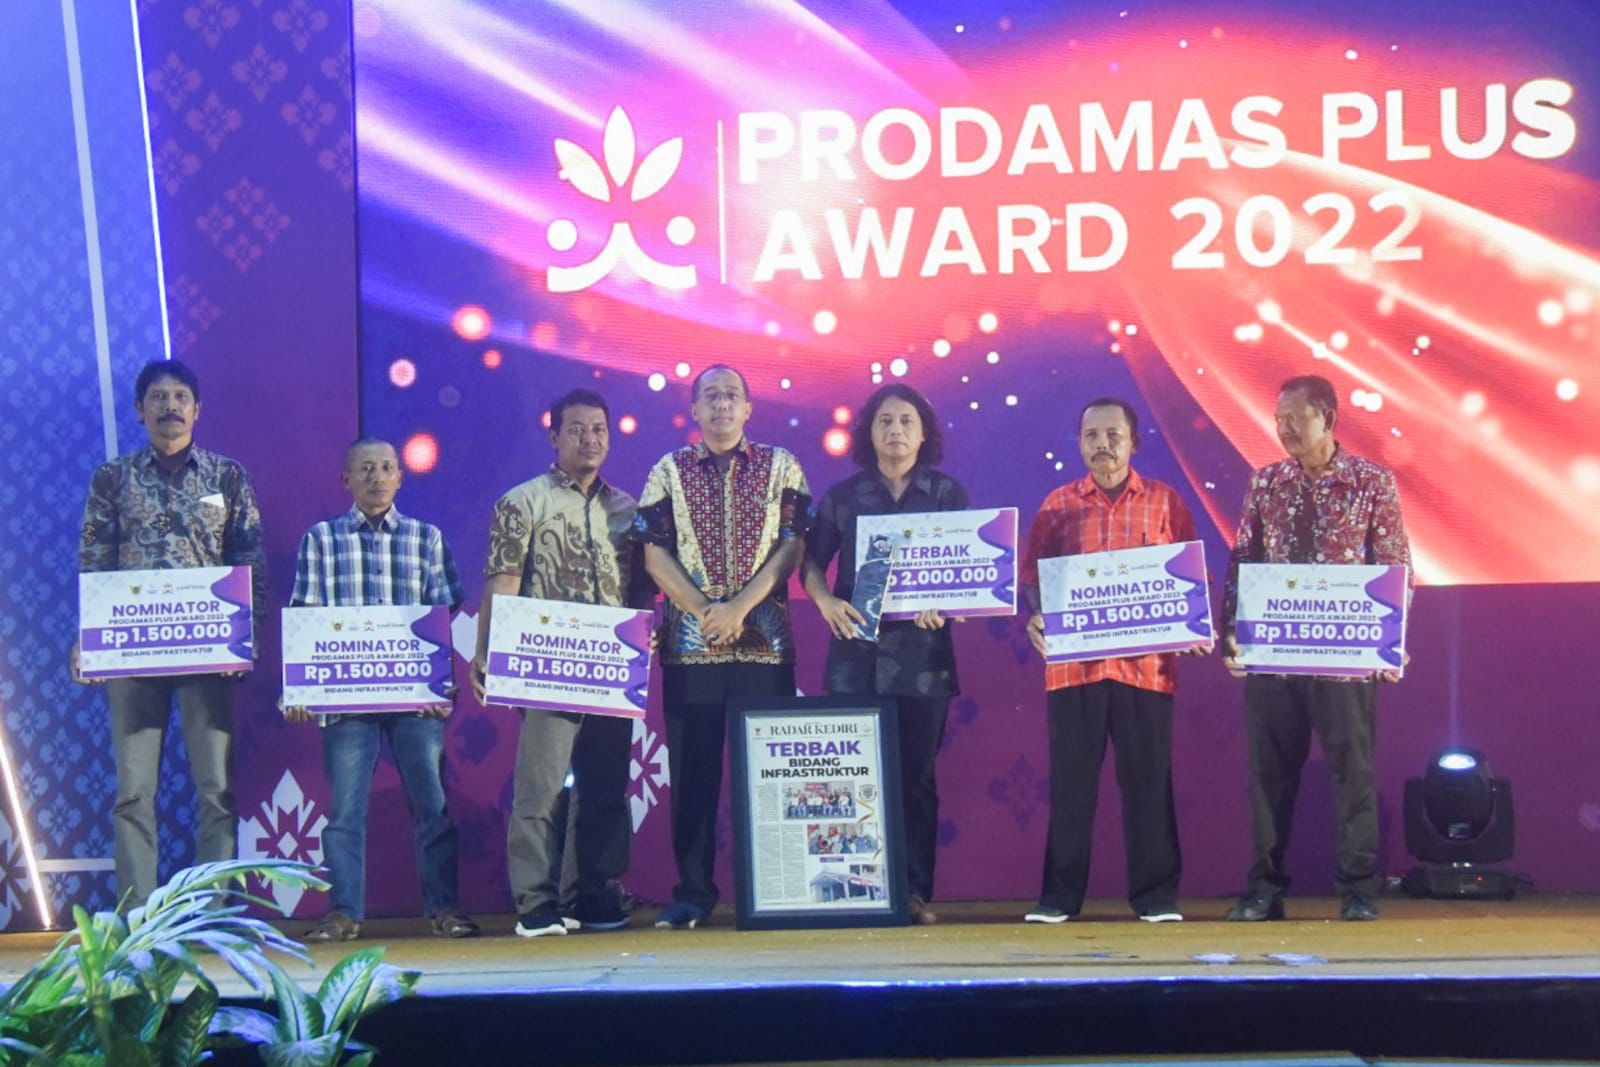 Prodamas Plus Award 2022, Wali Kota Kediri : Terima Kasih Telah Membangun Kota Kediri Bersama